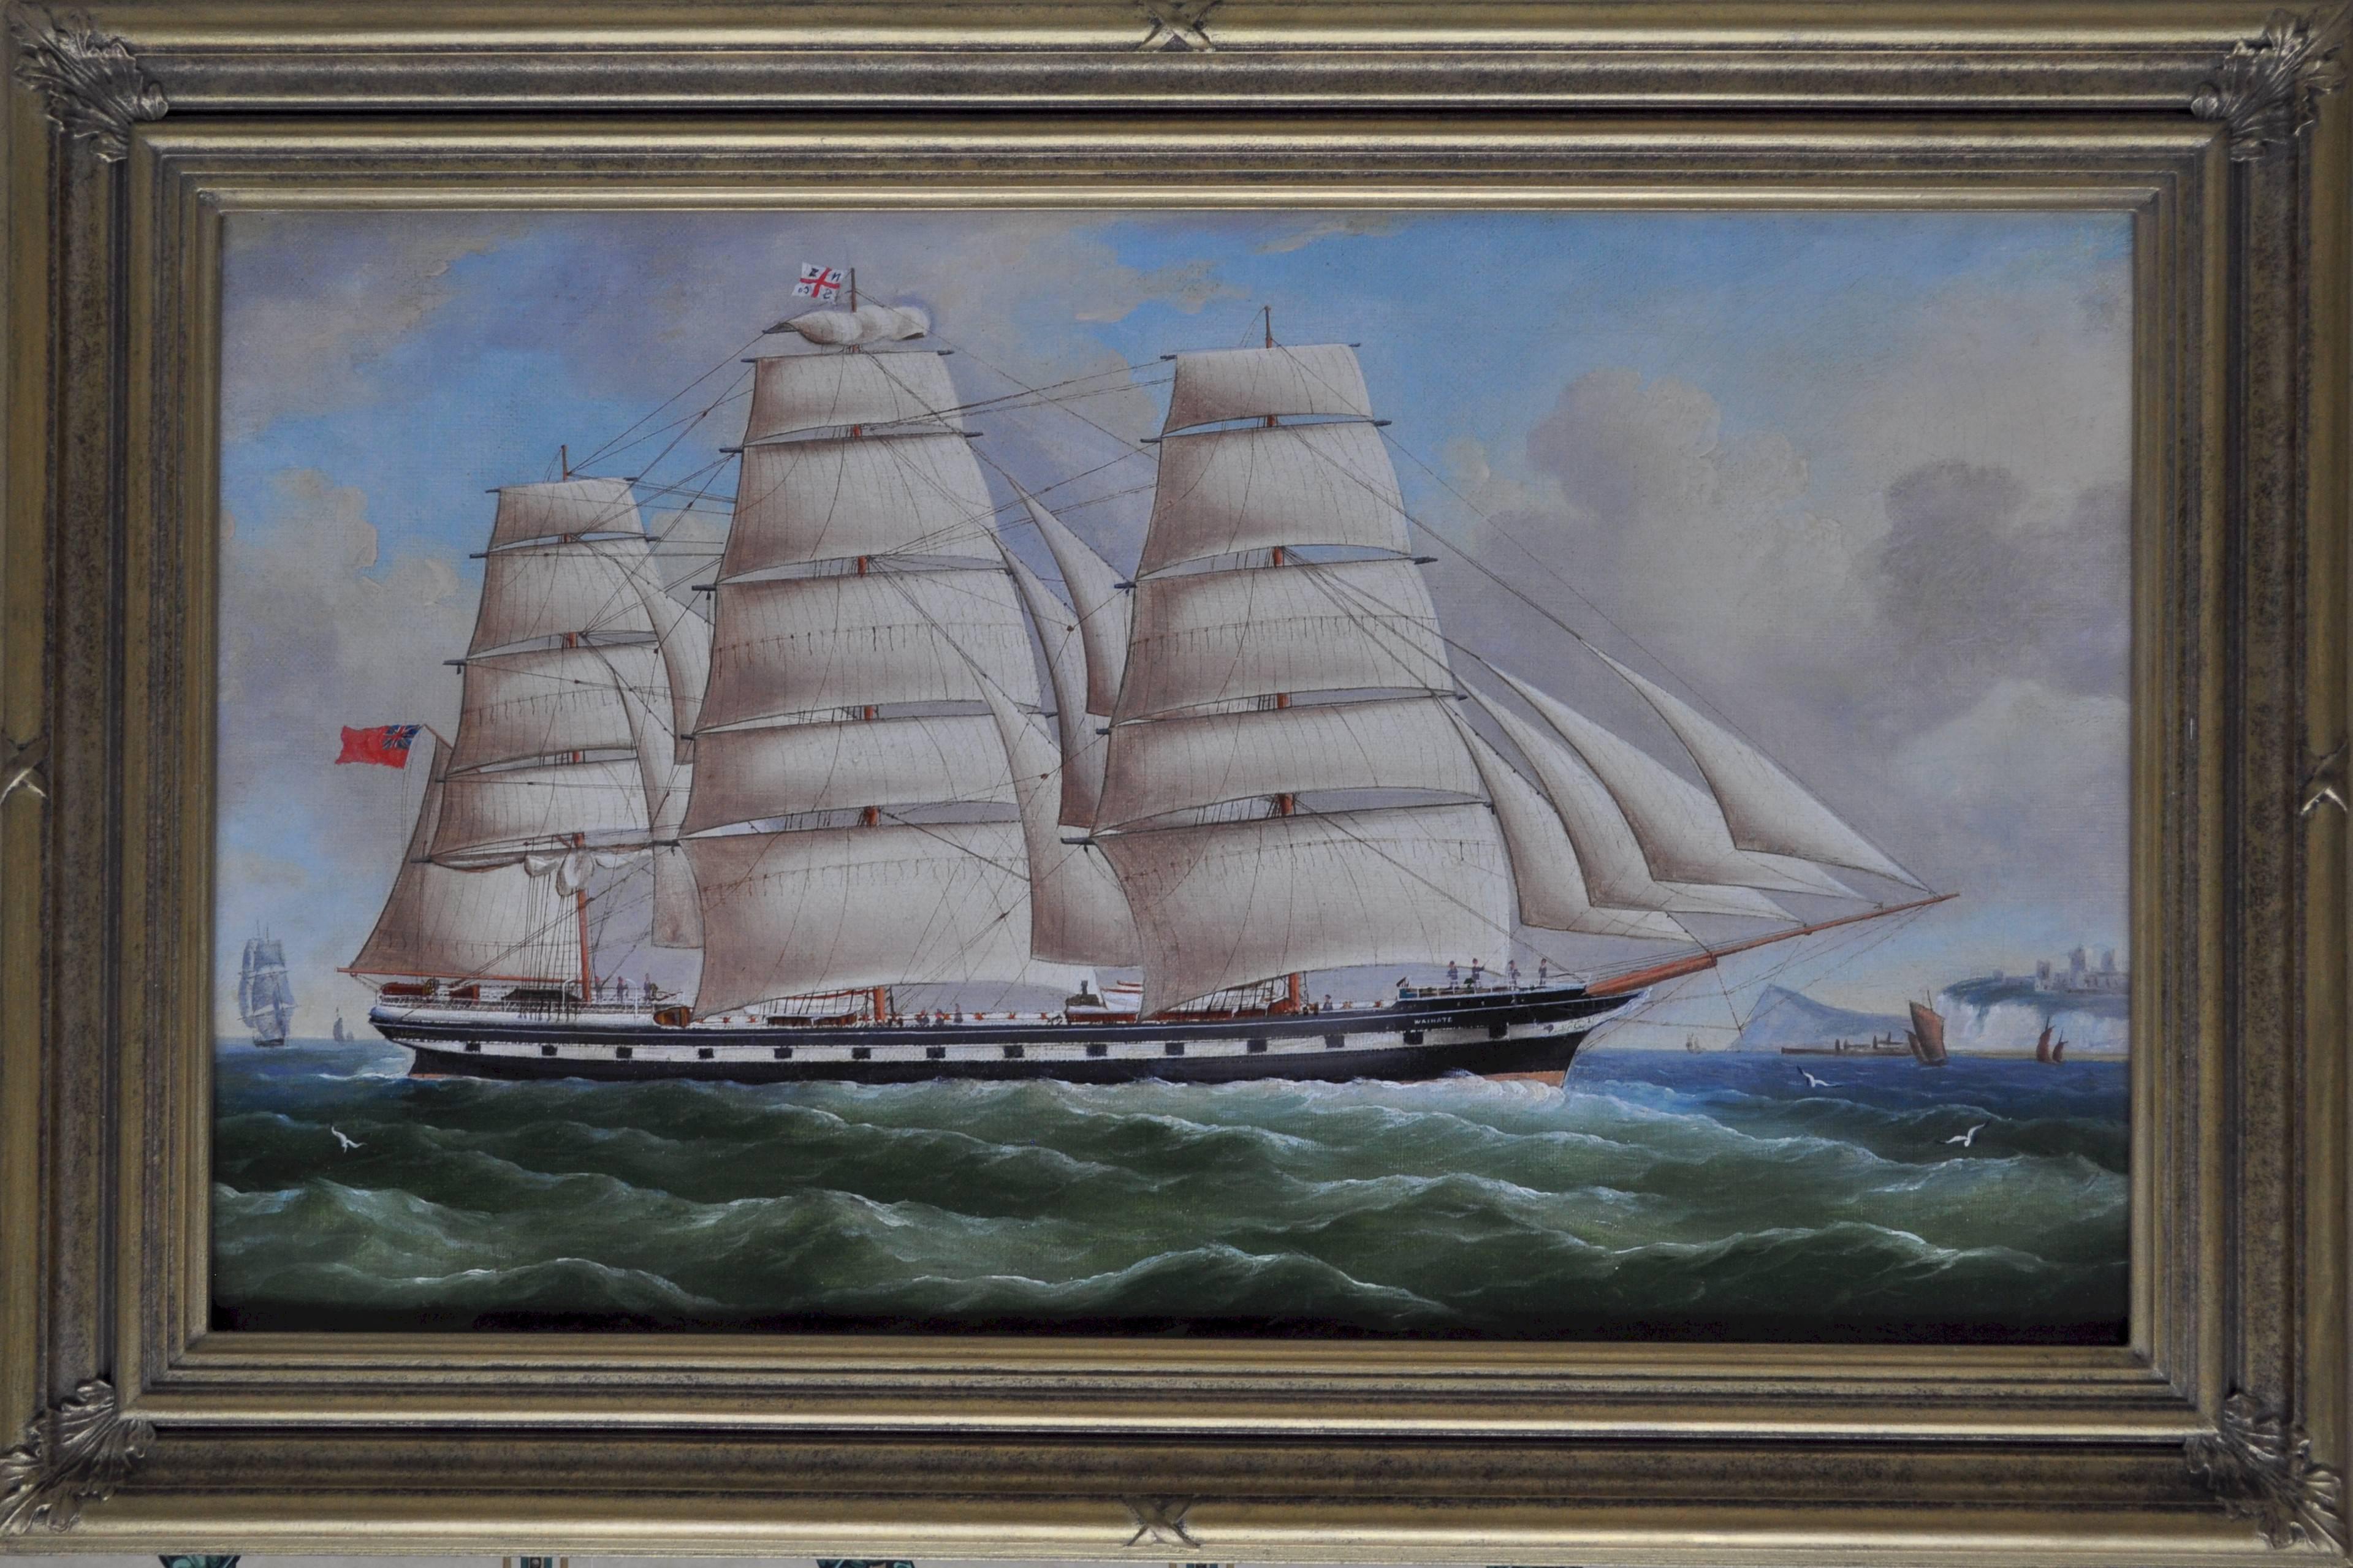 Wrinate in Full Sail - Painting by William Barnett Spencer